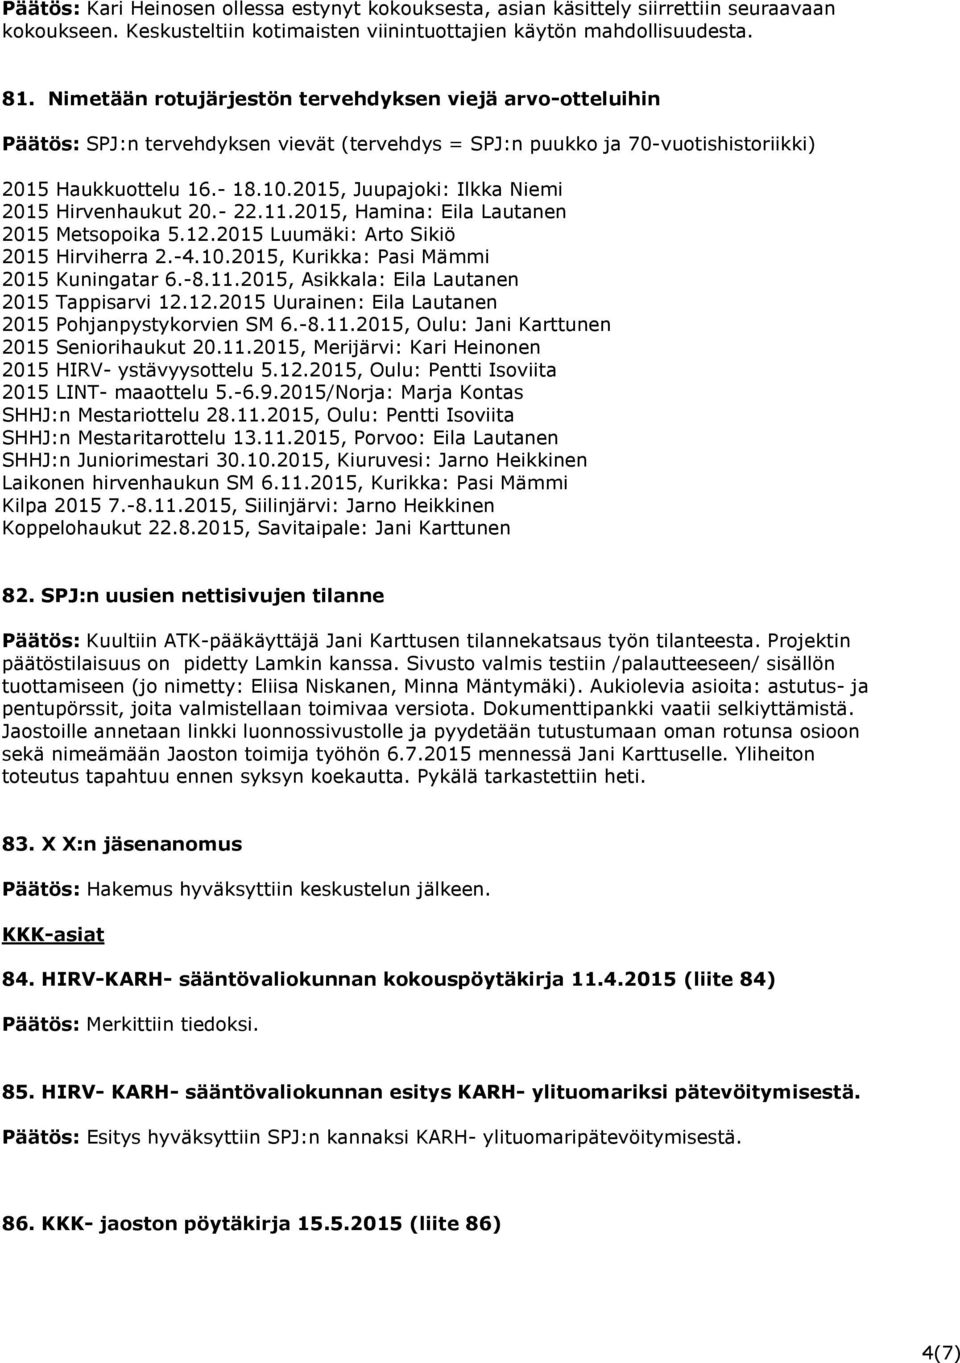 2015, Juupajoki: Ilkka Niemi 2015 Hirvenhaukut 20.- 22.11.2015, Hamina: Eila Lautanen 2015 Metsopoika 5.12.2015 Luumäki: Arto Sikiö 2015 Hirviherra 2.-4.10.2015, Kurikka: Pasi Mämmi 2015 Kuningatar 6.